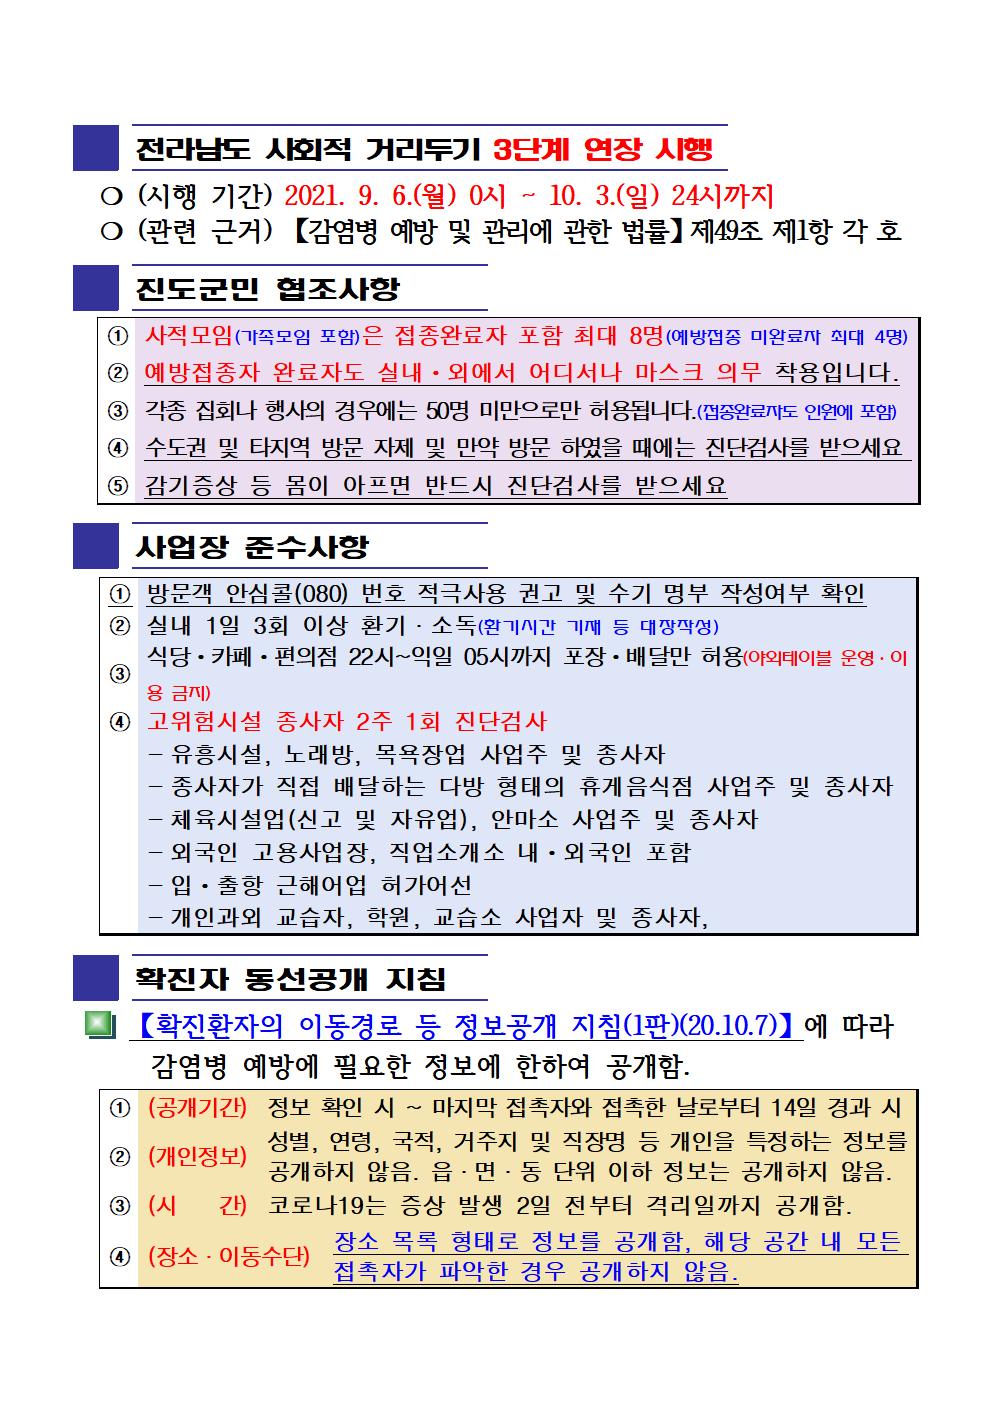 2021년 코로나19 대응 일일상황보고(9월 23일 24시 기준) 첨부#2